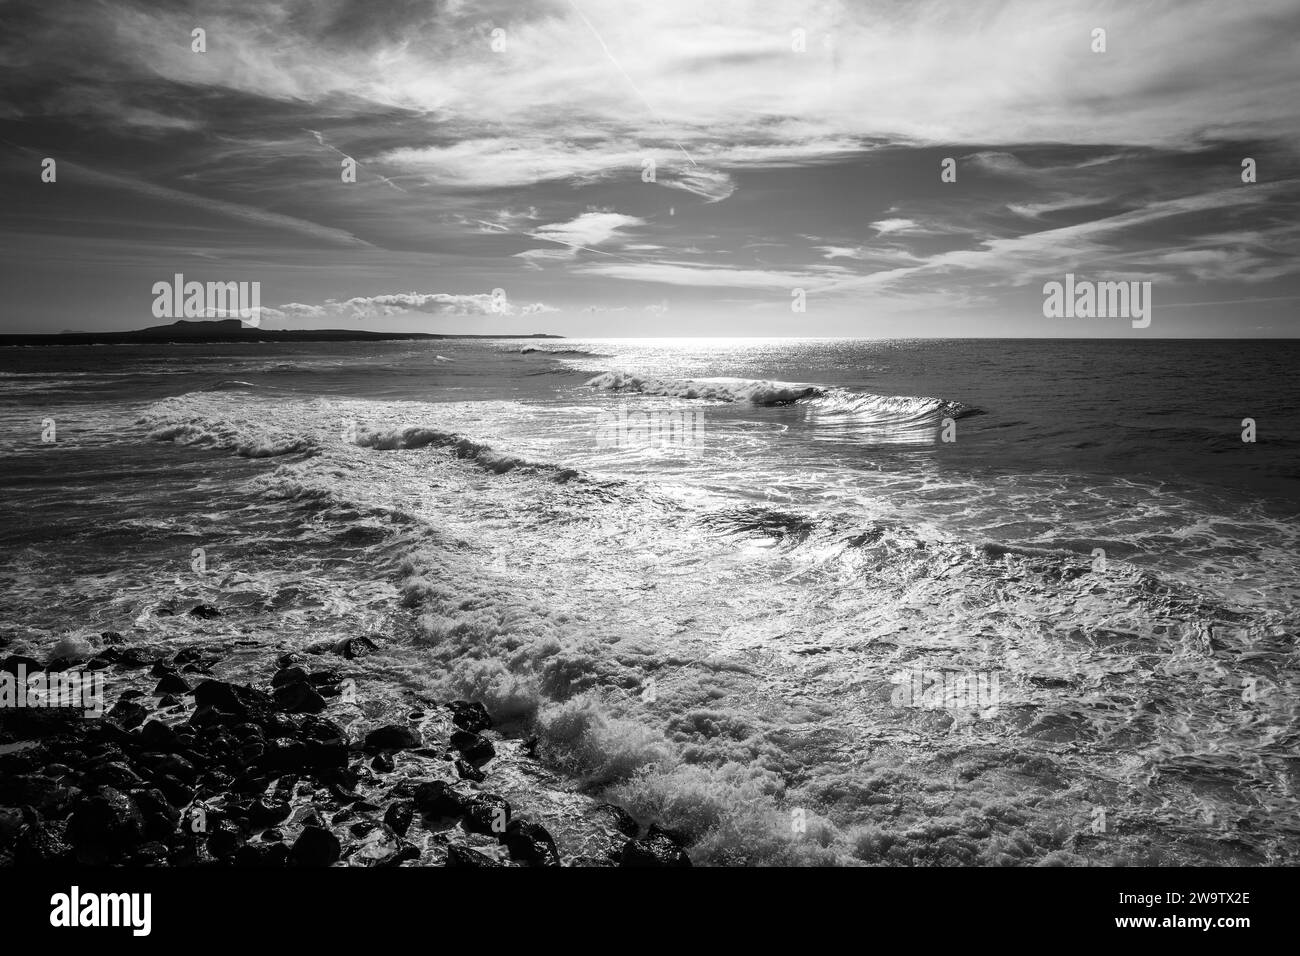 Meereslandschaft. Felsiges Ufer eines tosenden Ozeans. Schwarz-weiß. Lanzarote, Kanarische Inseln. Spanien. Stockfoto